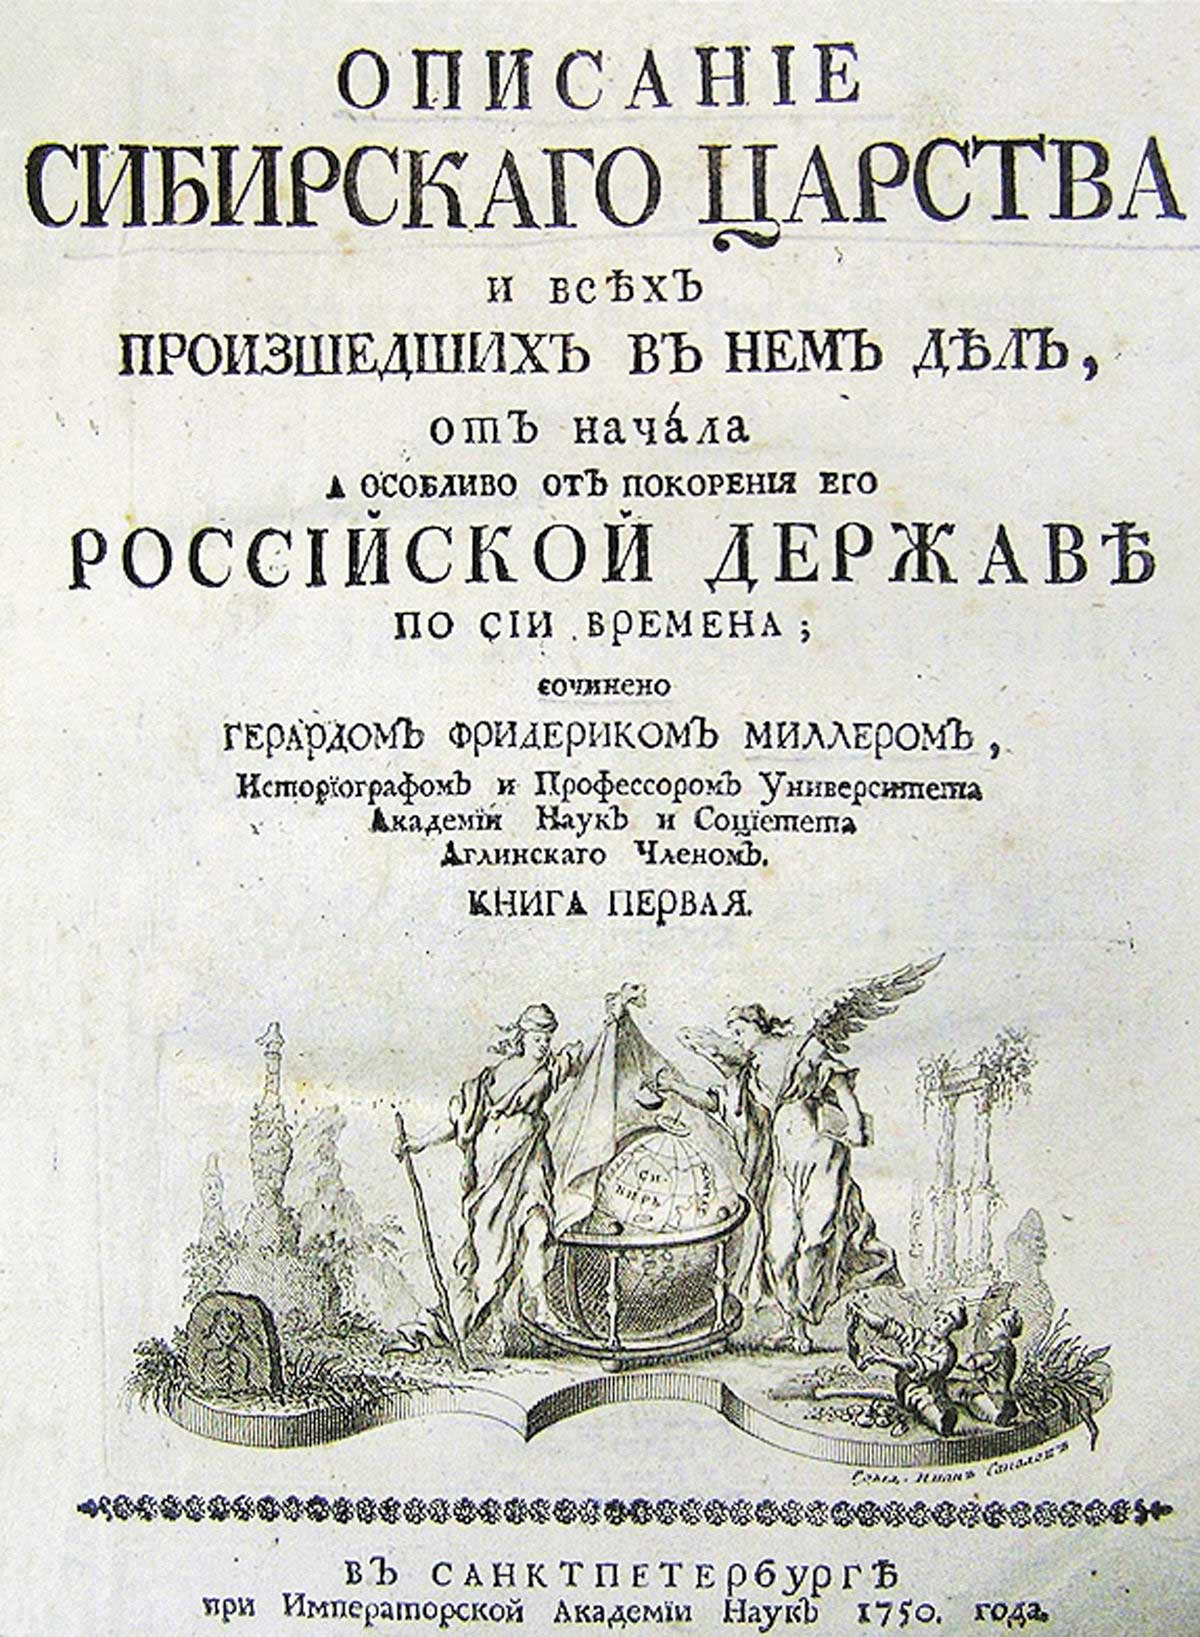 Књига из 1750. године о Сибирском царству